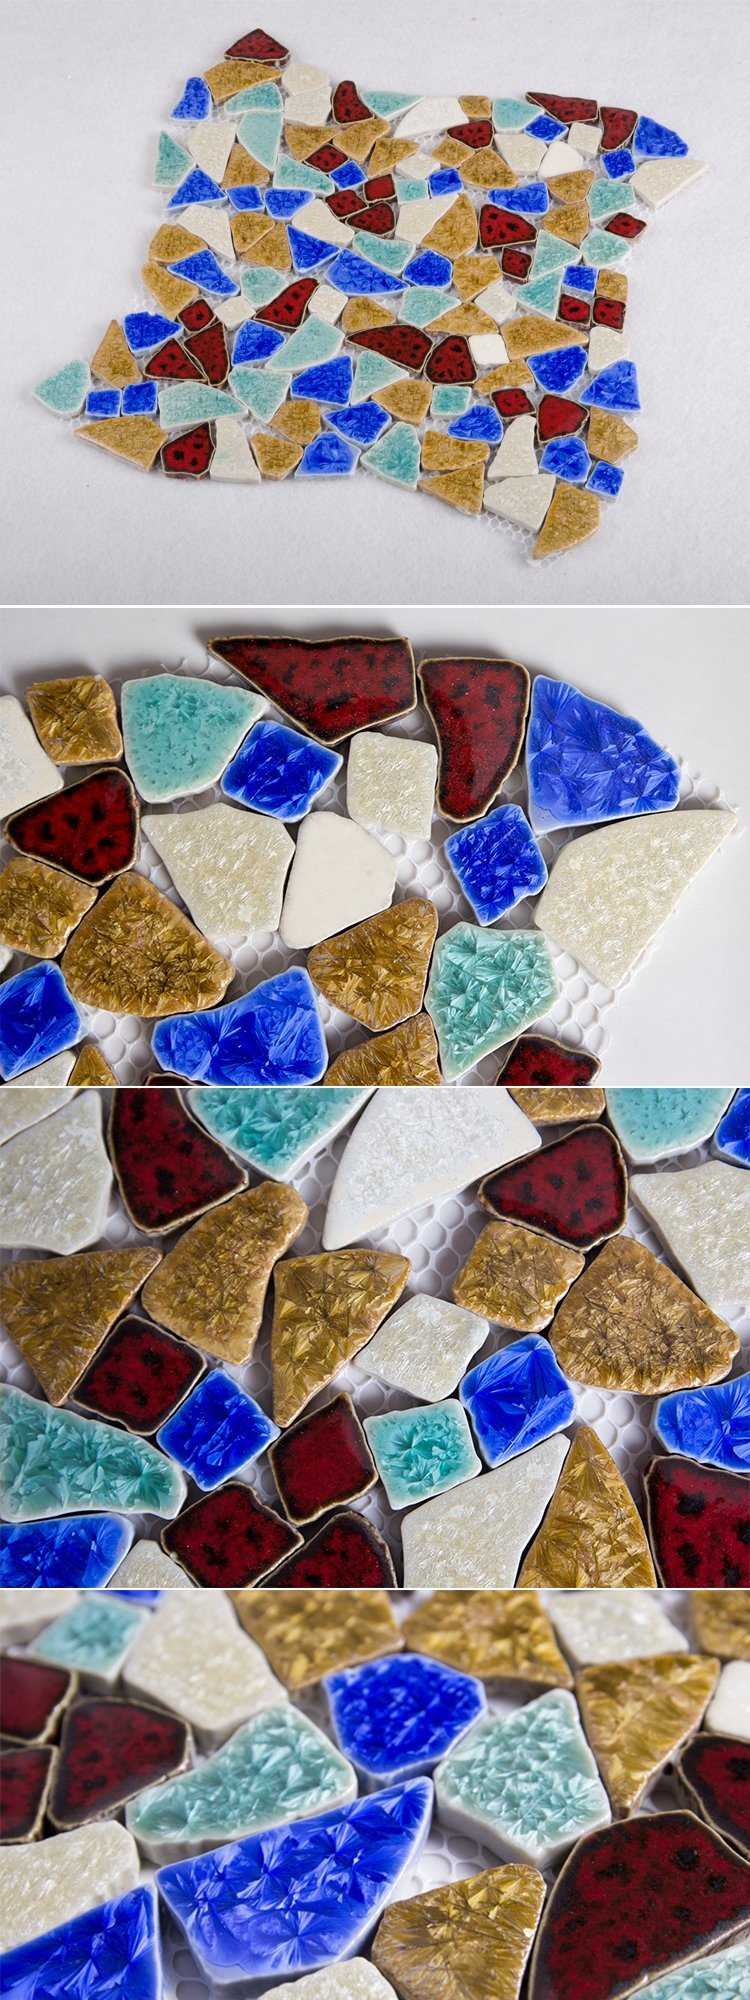 Transmutation Glazed Ceramic Pattern Luxury and Elegant Mosaic Tile